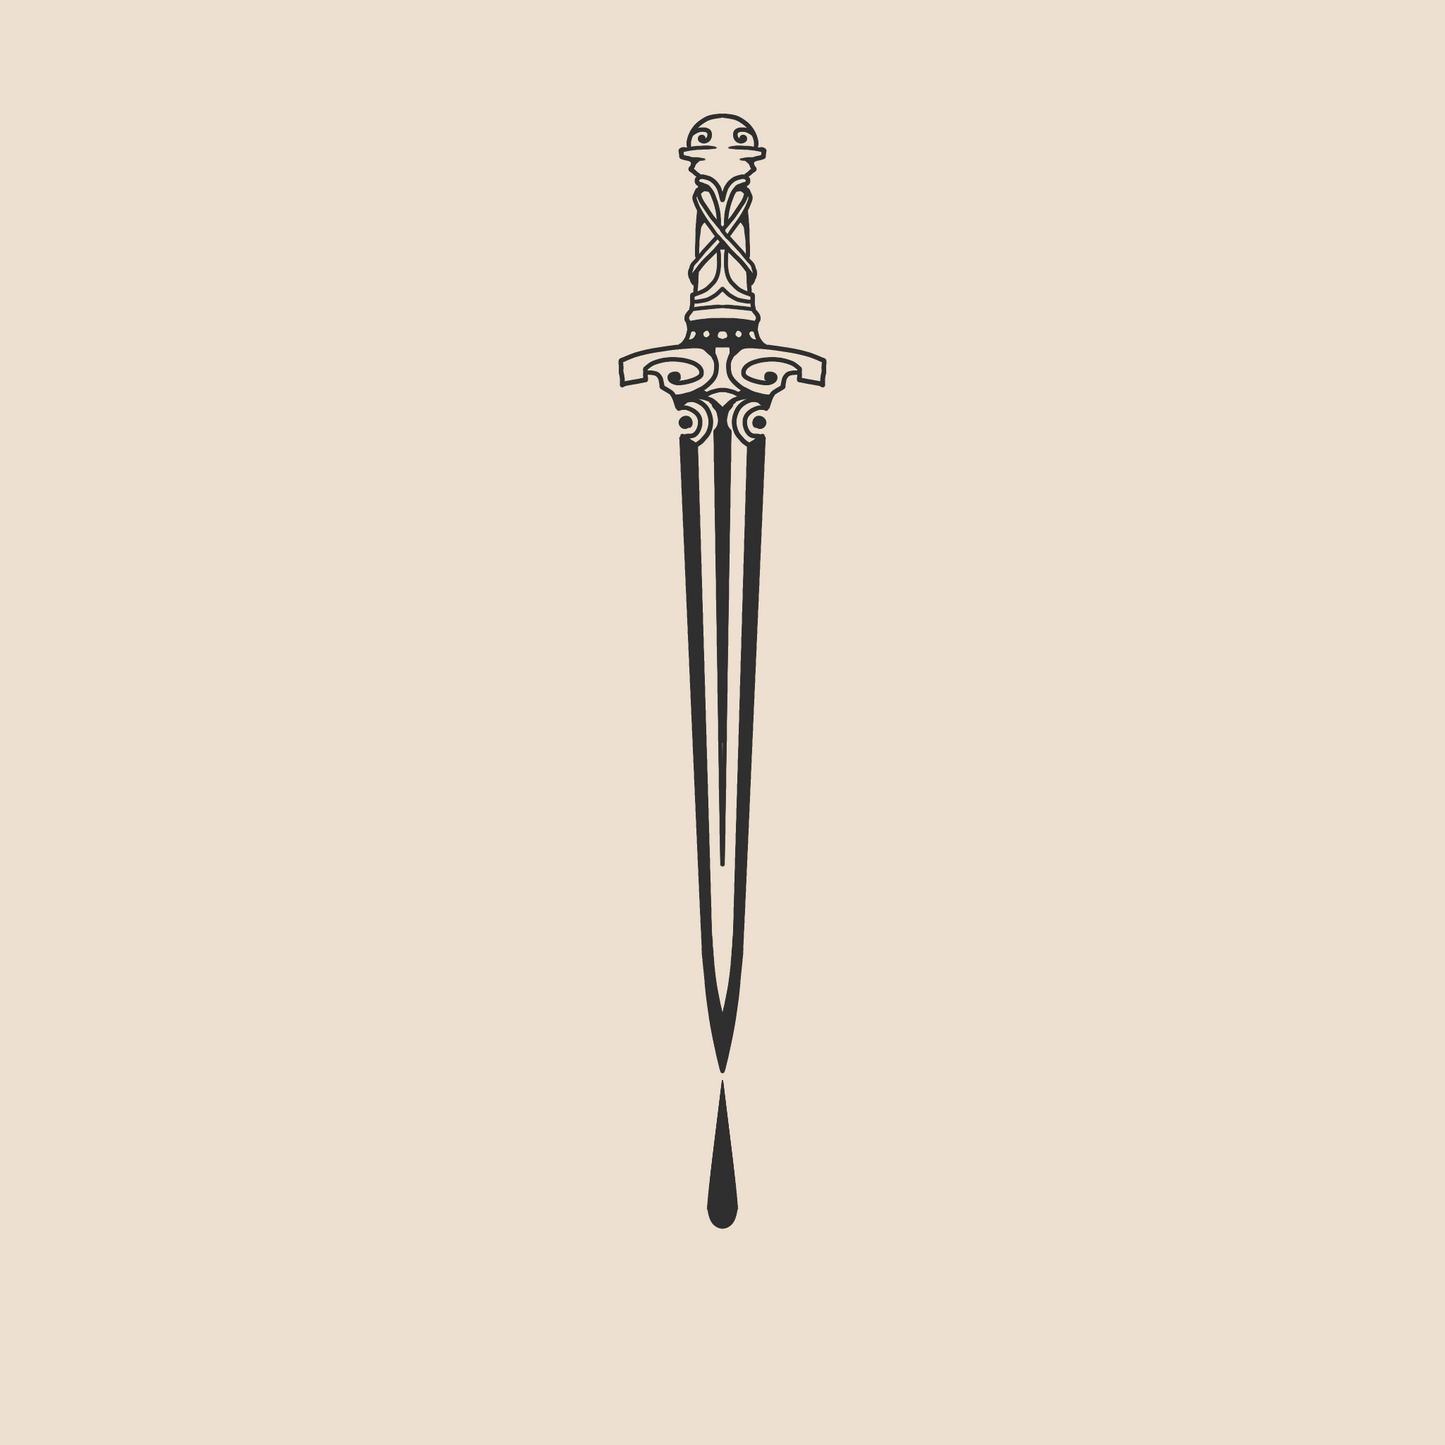 Lost hero sword - 996